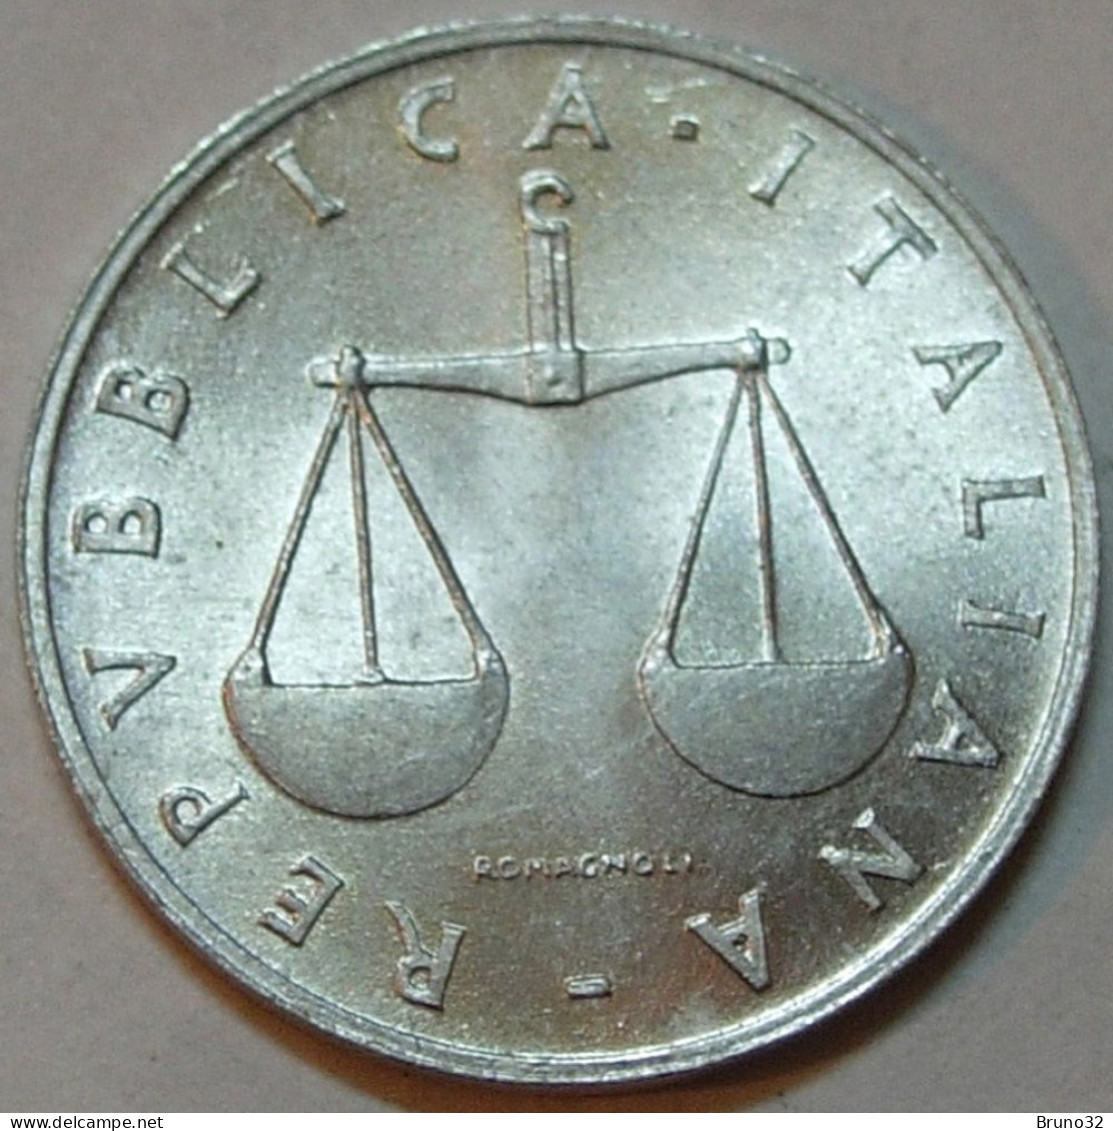 ITALIA - Lire 1 1955 - FDC/Unc Da Rotolino/from Roll 1 Moneta/1 Coin - 1 Lire